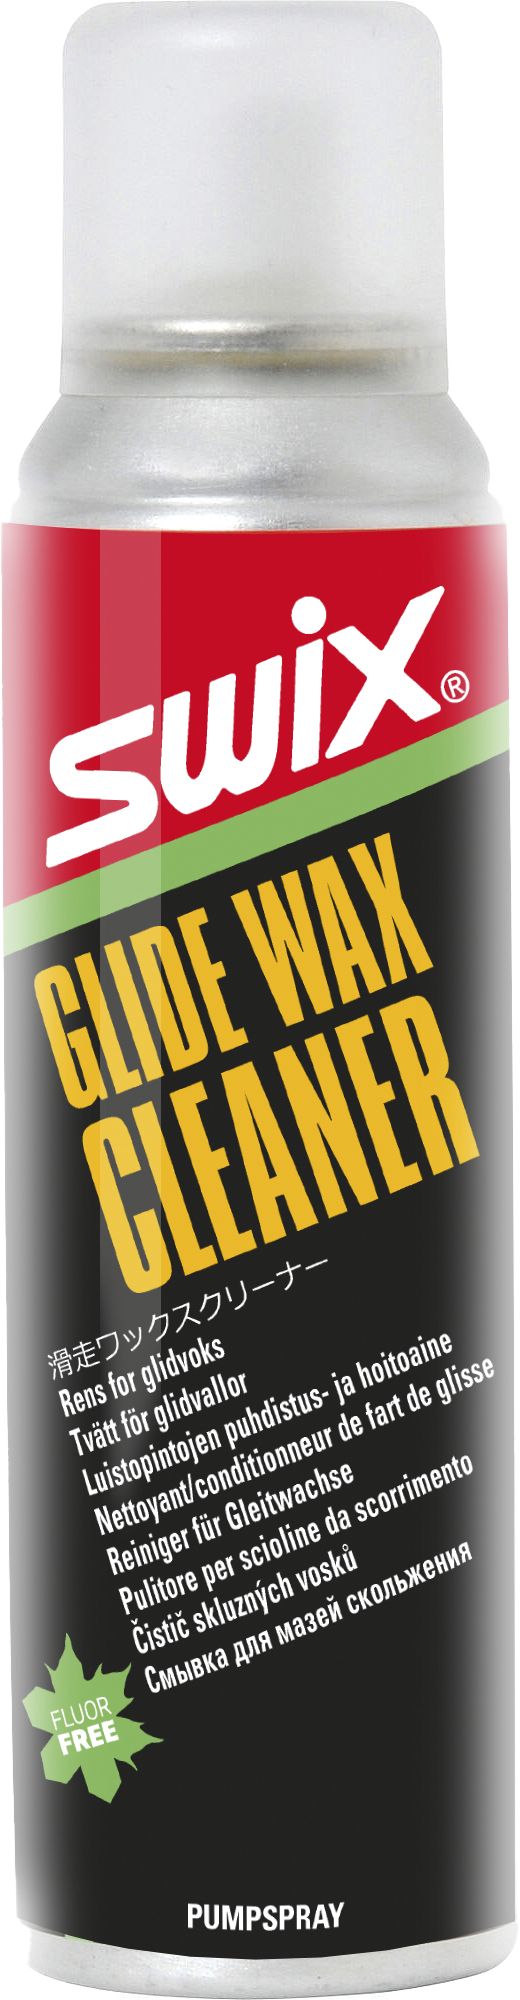 SWIX, I84N GLIDE WAX CLEANER 150ML